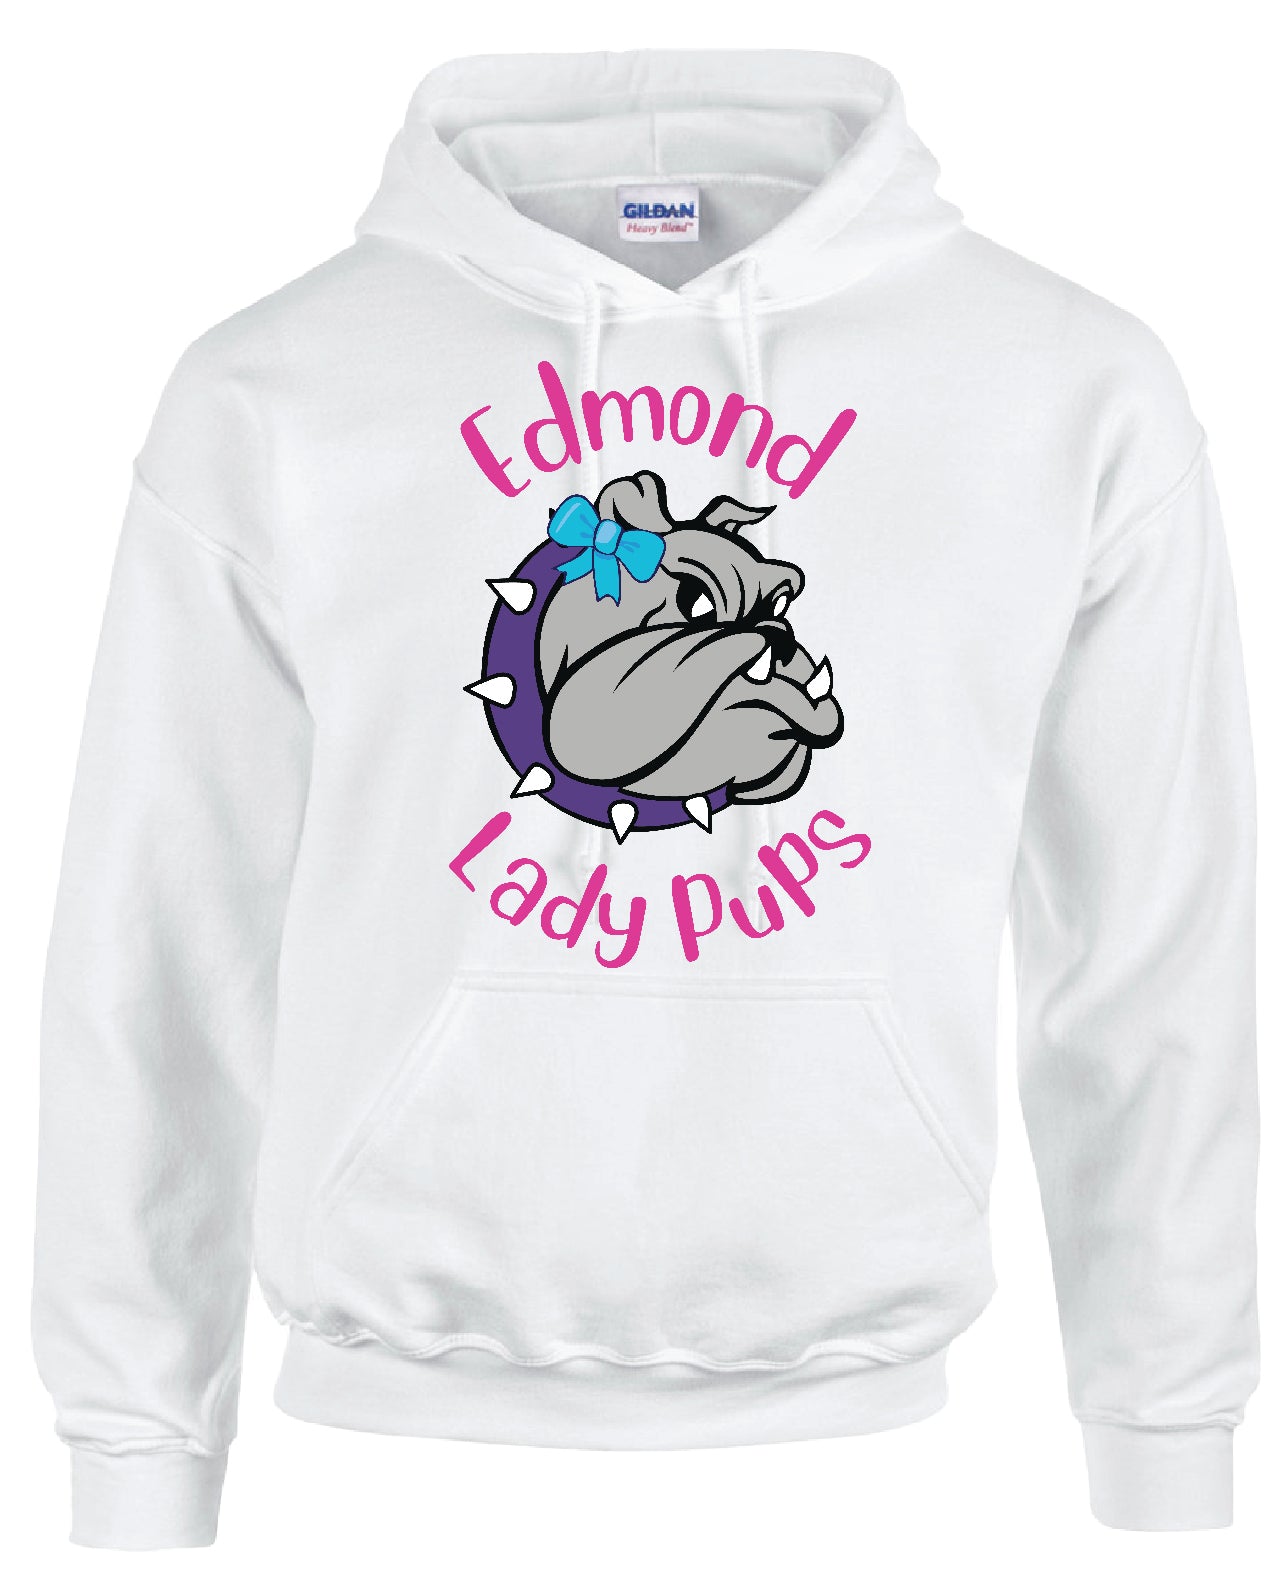 Edmond Lady Pups Hoodie or Crewneck Sweatshirt